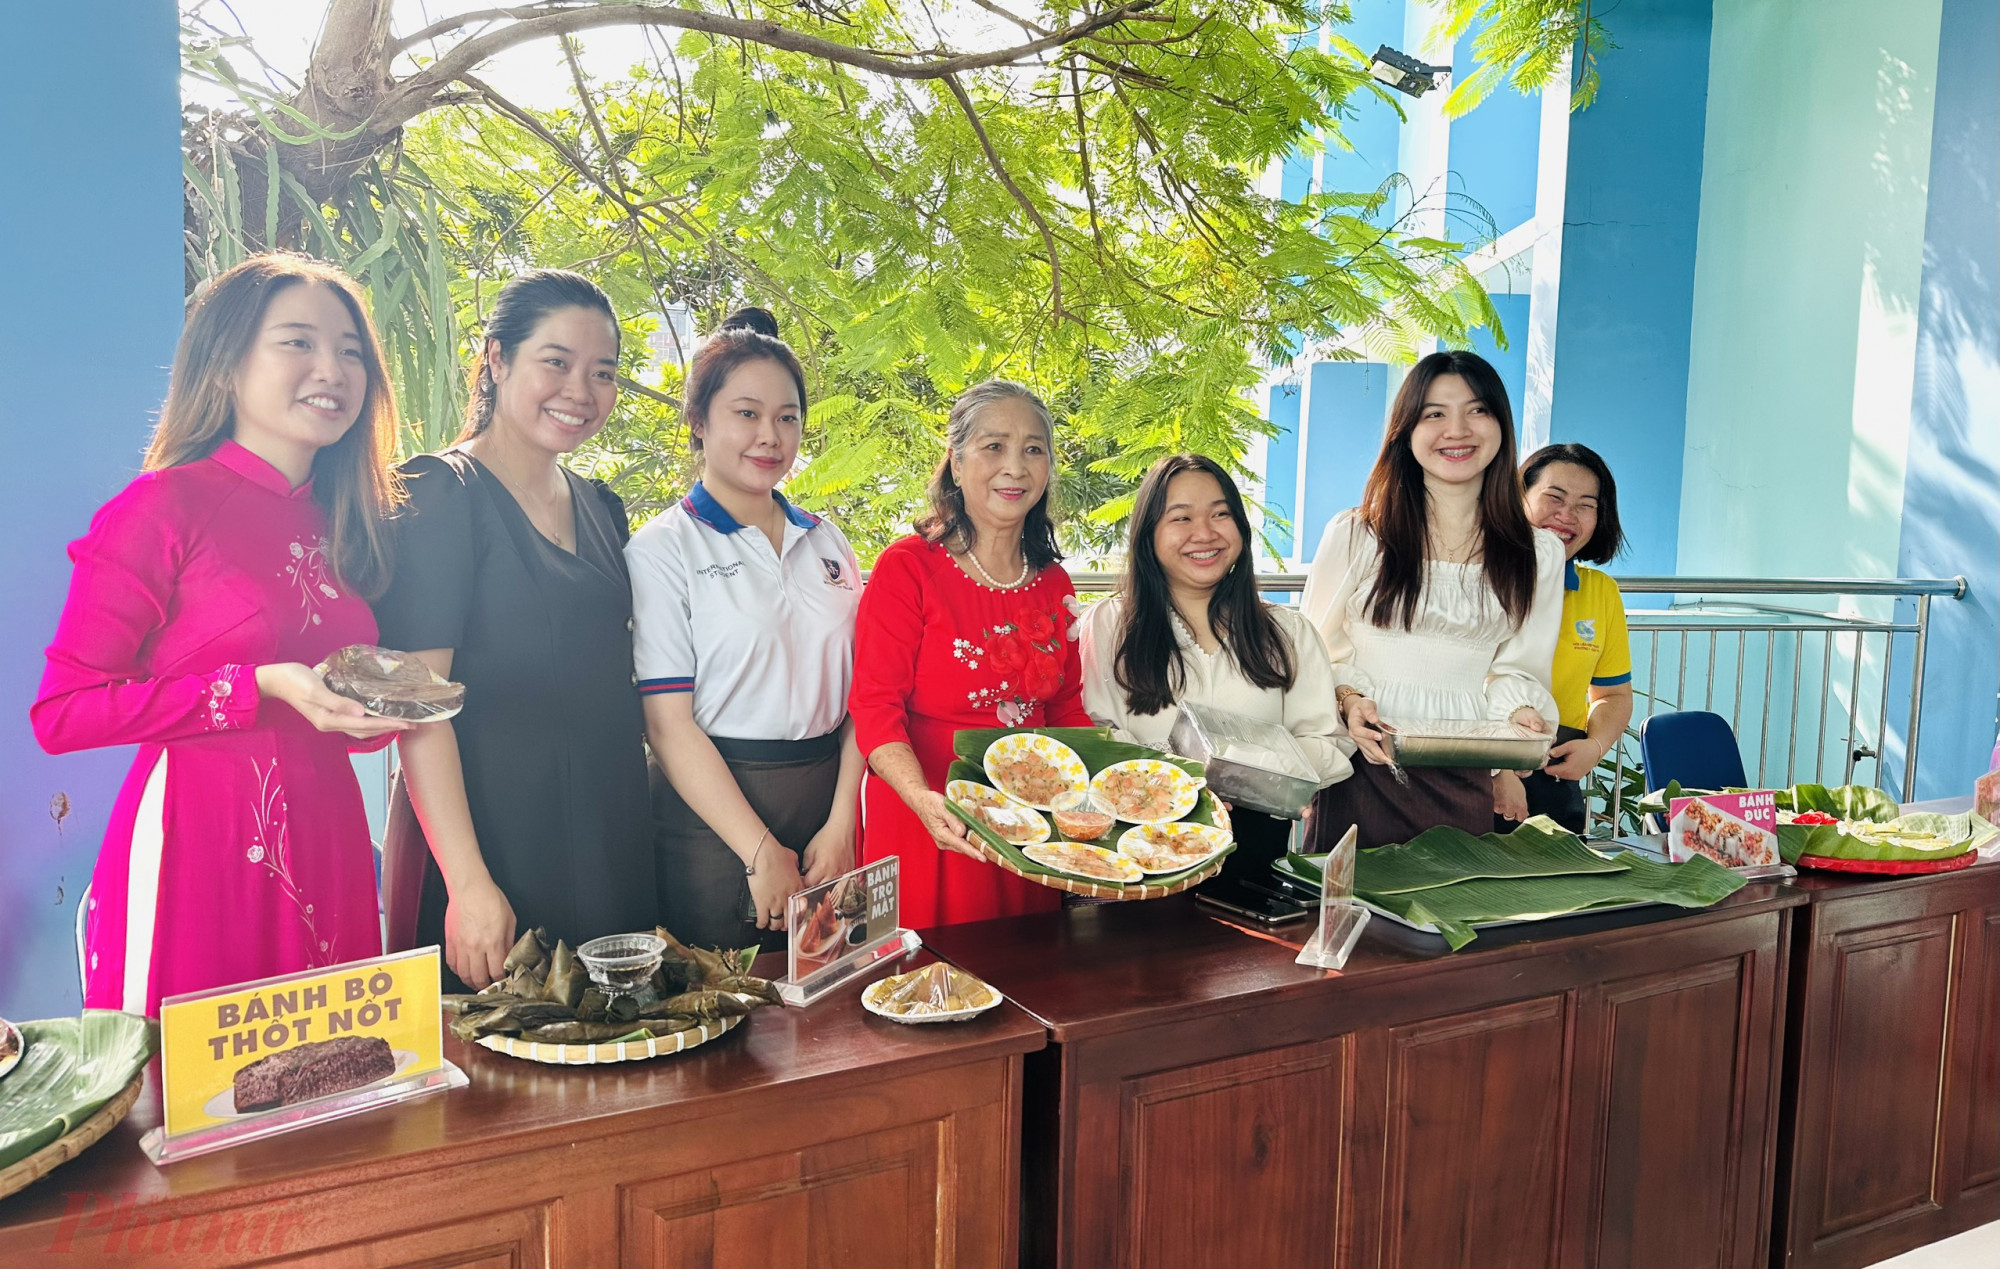 Các bạn du học sinh nước ngoài đang sinh sống và học tập trên địa bàn quận cùng giao lưu, chia sẻ những kỉ niệm đáng nhớ về các hoạt động gắn kết, trải nghiệm cùng gia đình người Việt,  Hội LHPN,…